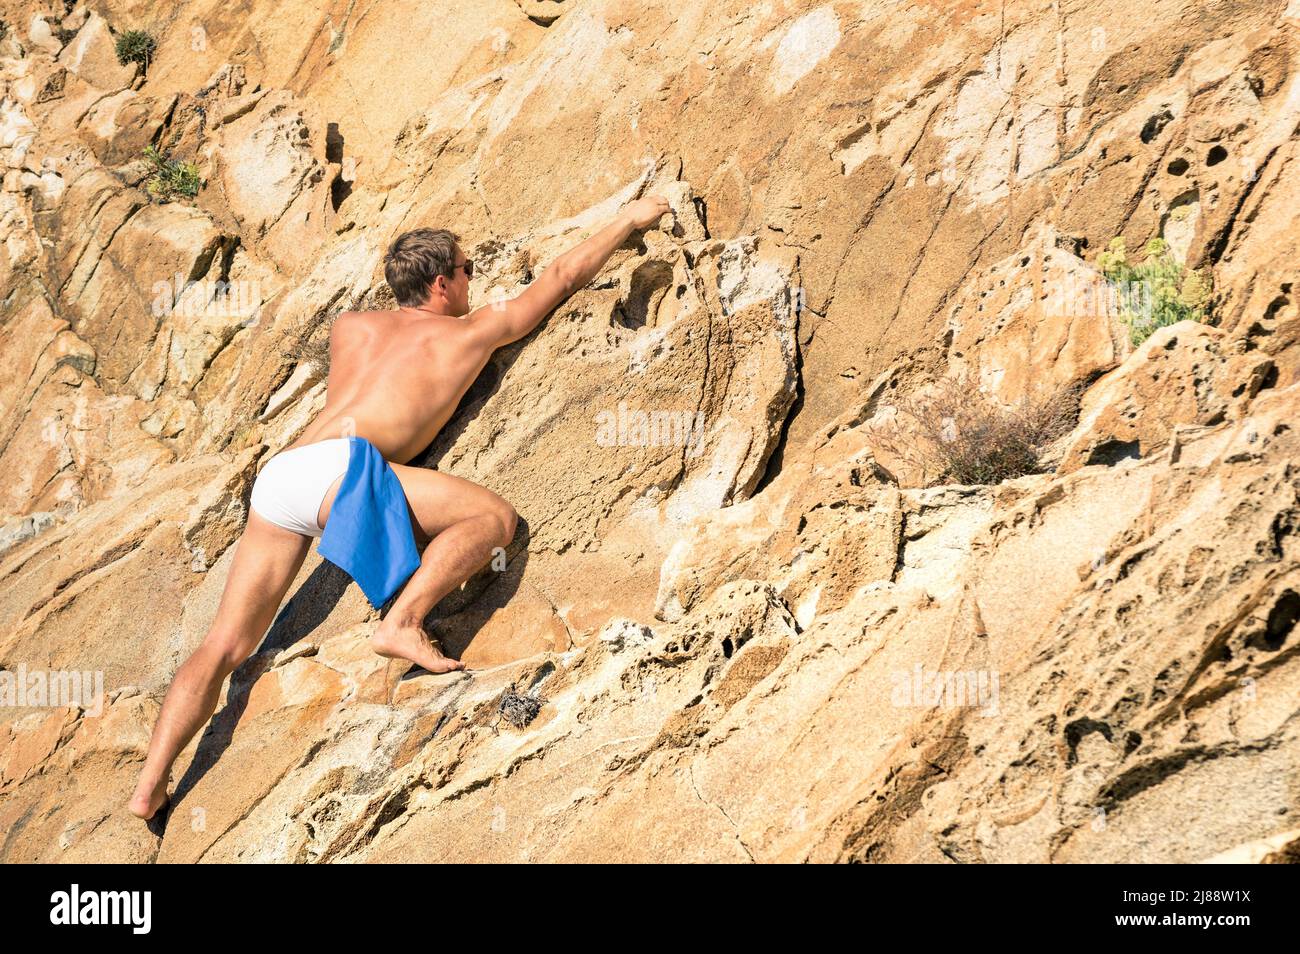 Jeune homme athlétique escalade libre sans équipement sur une pente de roche dangereuse - concept aventureux de liberté et de contact avec la nature sauvage Banque D'Images